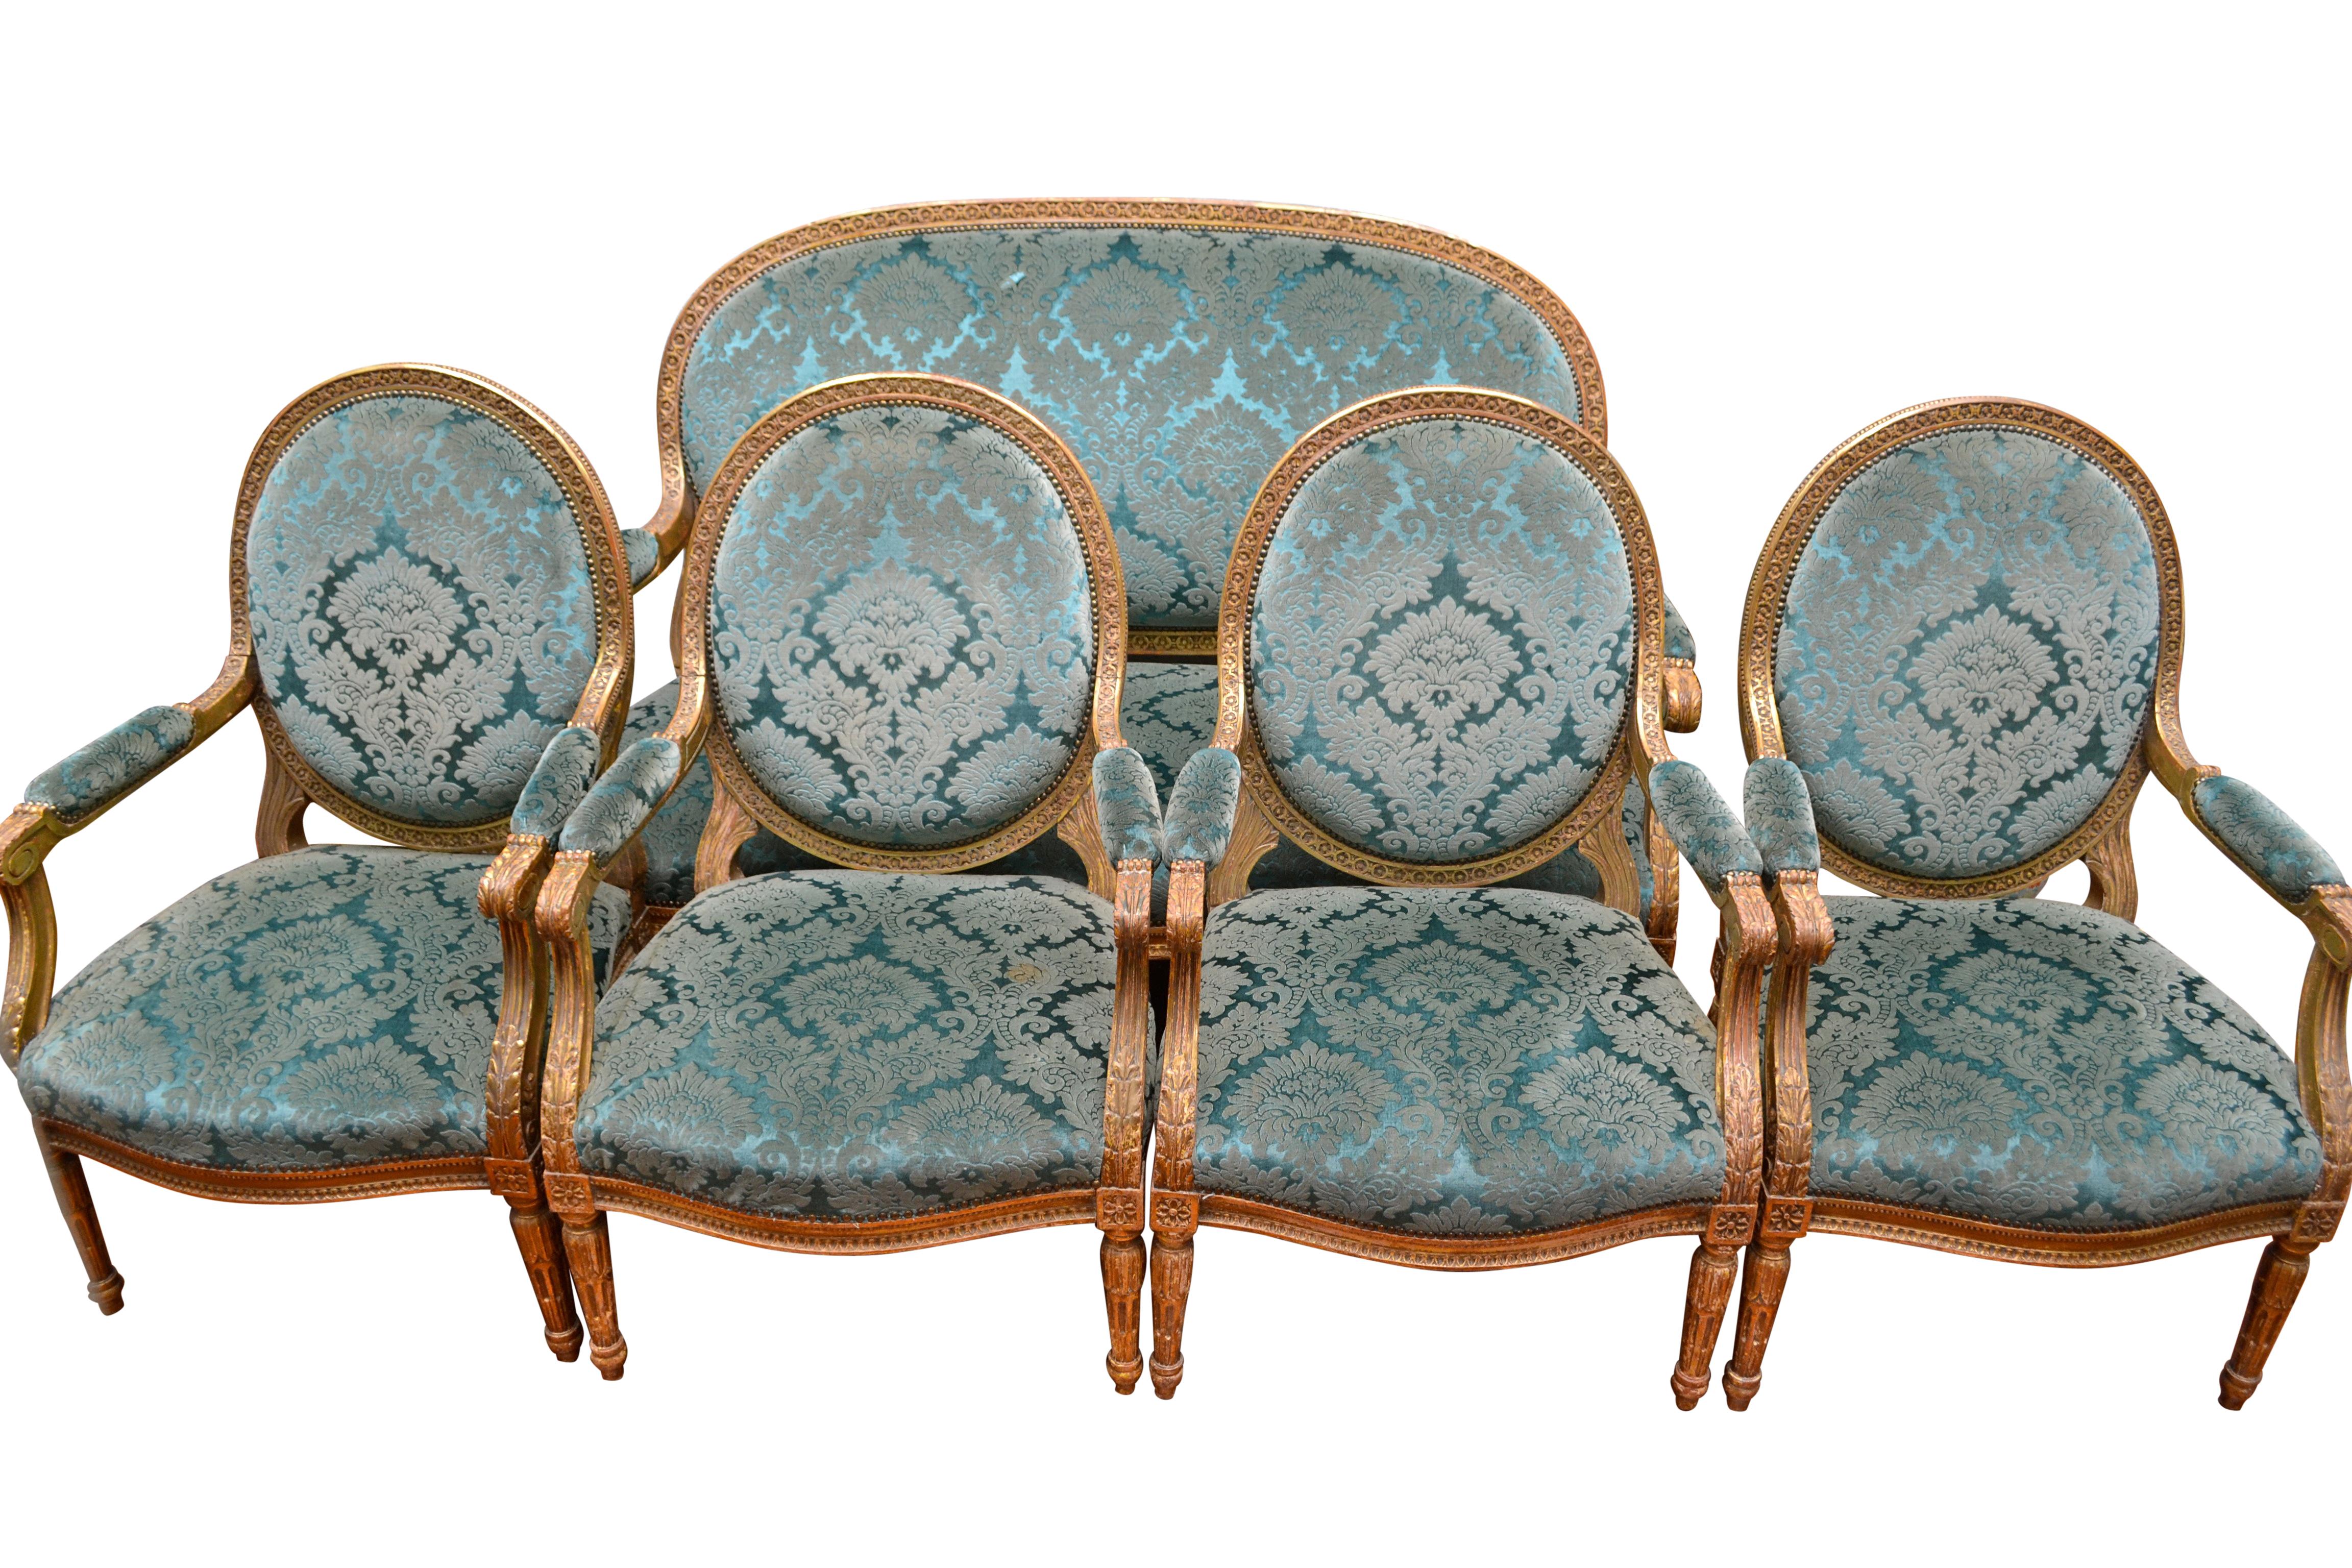 Ensemble de salon de style Louis XVI comprenant quatre fauteuils et un canapé assorti. Les cadres profondément sculptés sont finis à la feuille d'or et tapissés d'un velours de soie italien turquoise antique qui était à l'origine utilisé comme